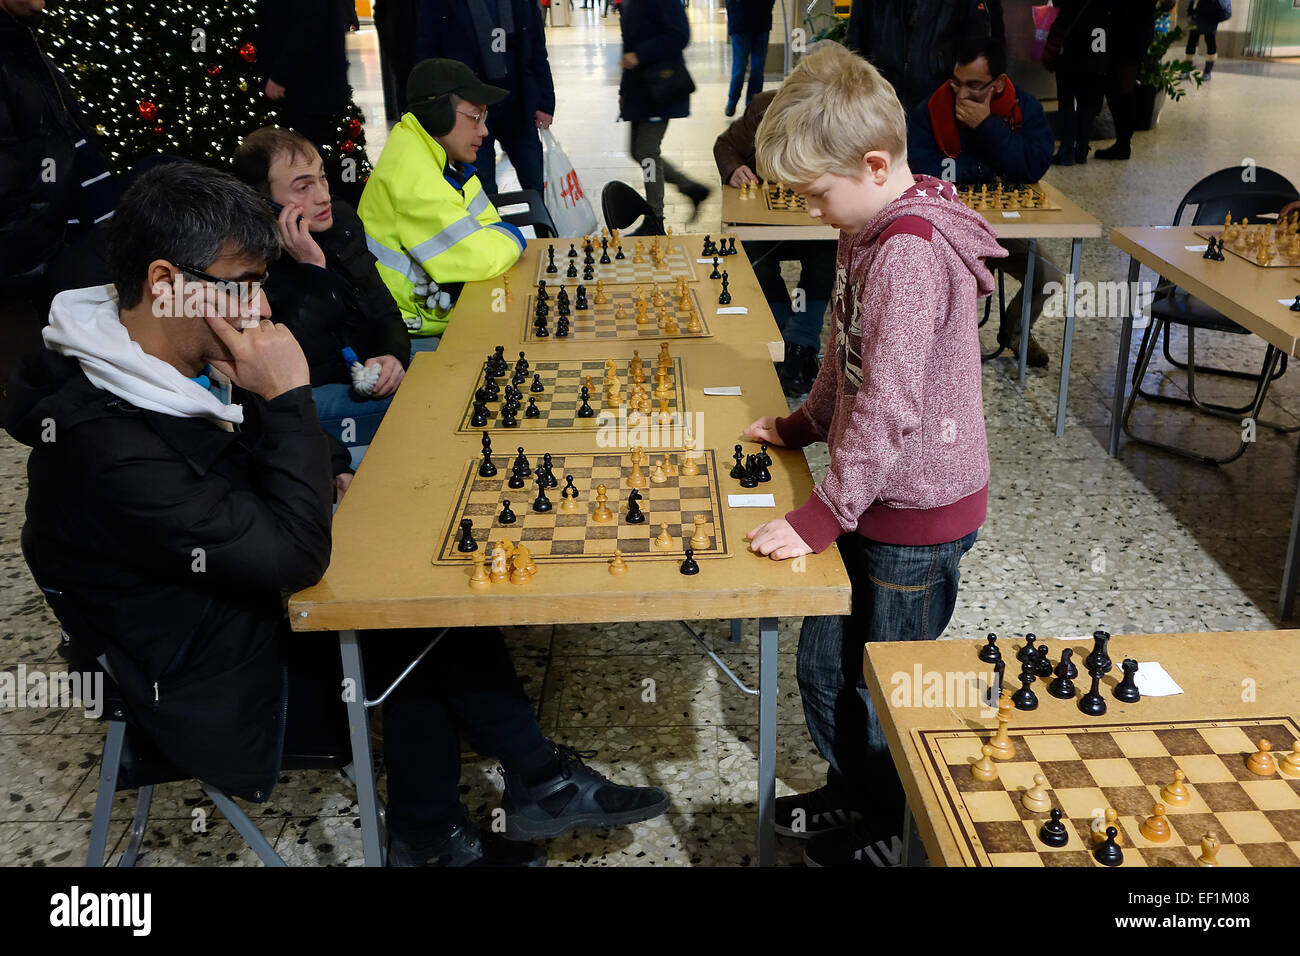 10 Jahre alter Junge spielt simultan Schach-Spiel mit 10 Erwachsenen Teilnehmern.  Nordstan, Göteborg, Göteborg, Schweden Stockfoto